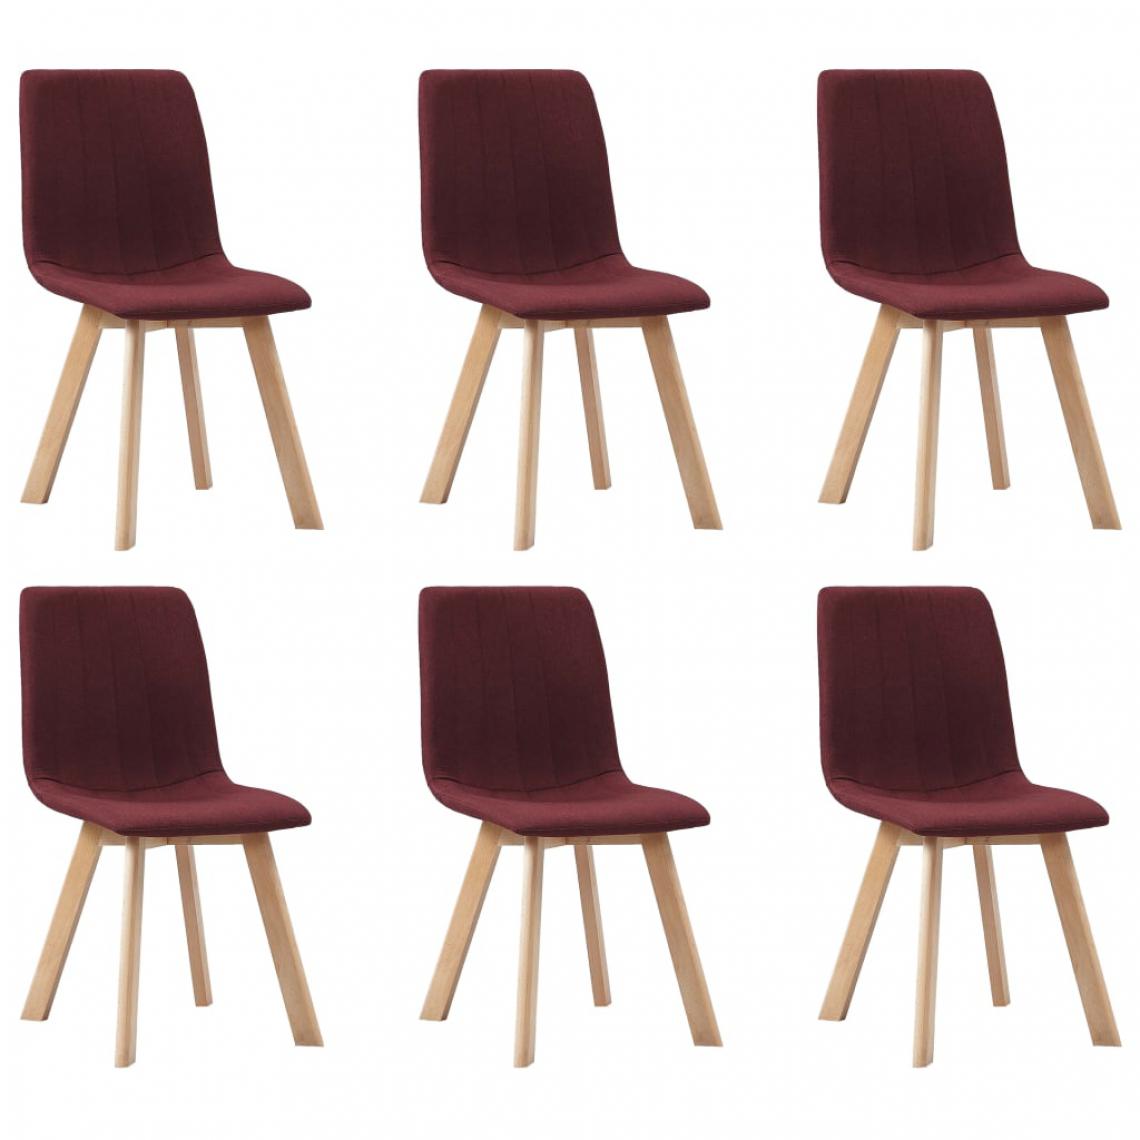 Chunhelife - Chaises de salle à manger 6 pcs Rouge bordeaux Tissu - Chaises